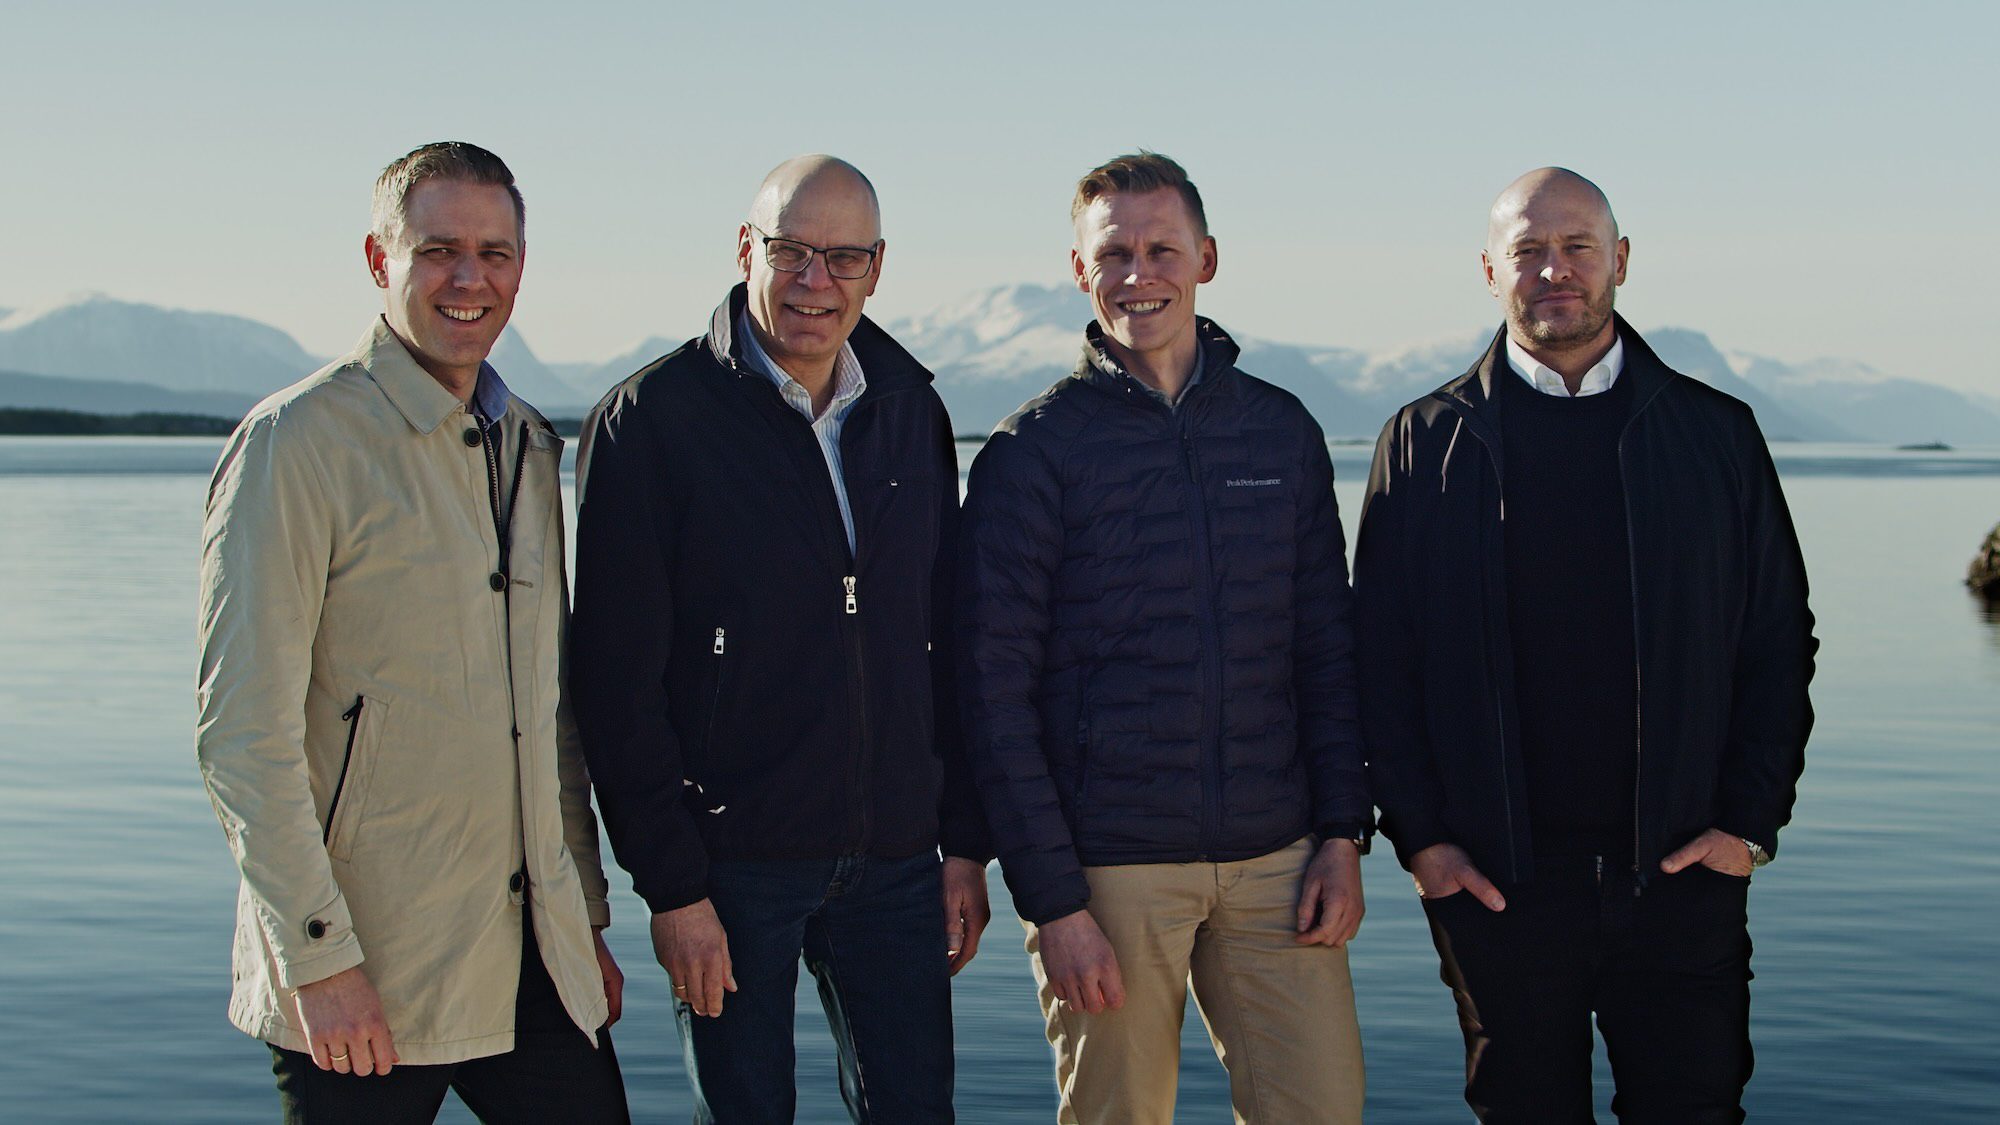 Motus vinner kontrakt på Empire Wind 1.
På Bildet fra venstre : Magnus Lerheim ( Sales Manager) , Robert Bjerknes ( Project Manager) , Bernt Elias Sandøy ( CTO) , Ole Kristian Varhaugvik ( Sales Director )